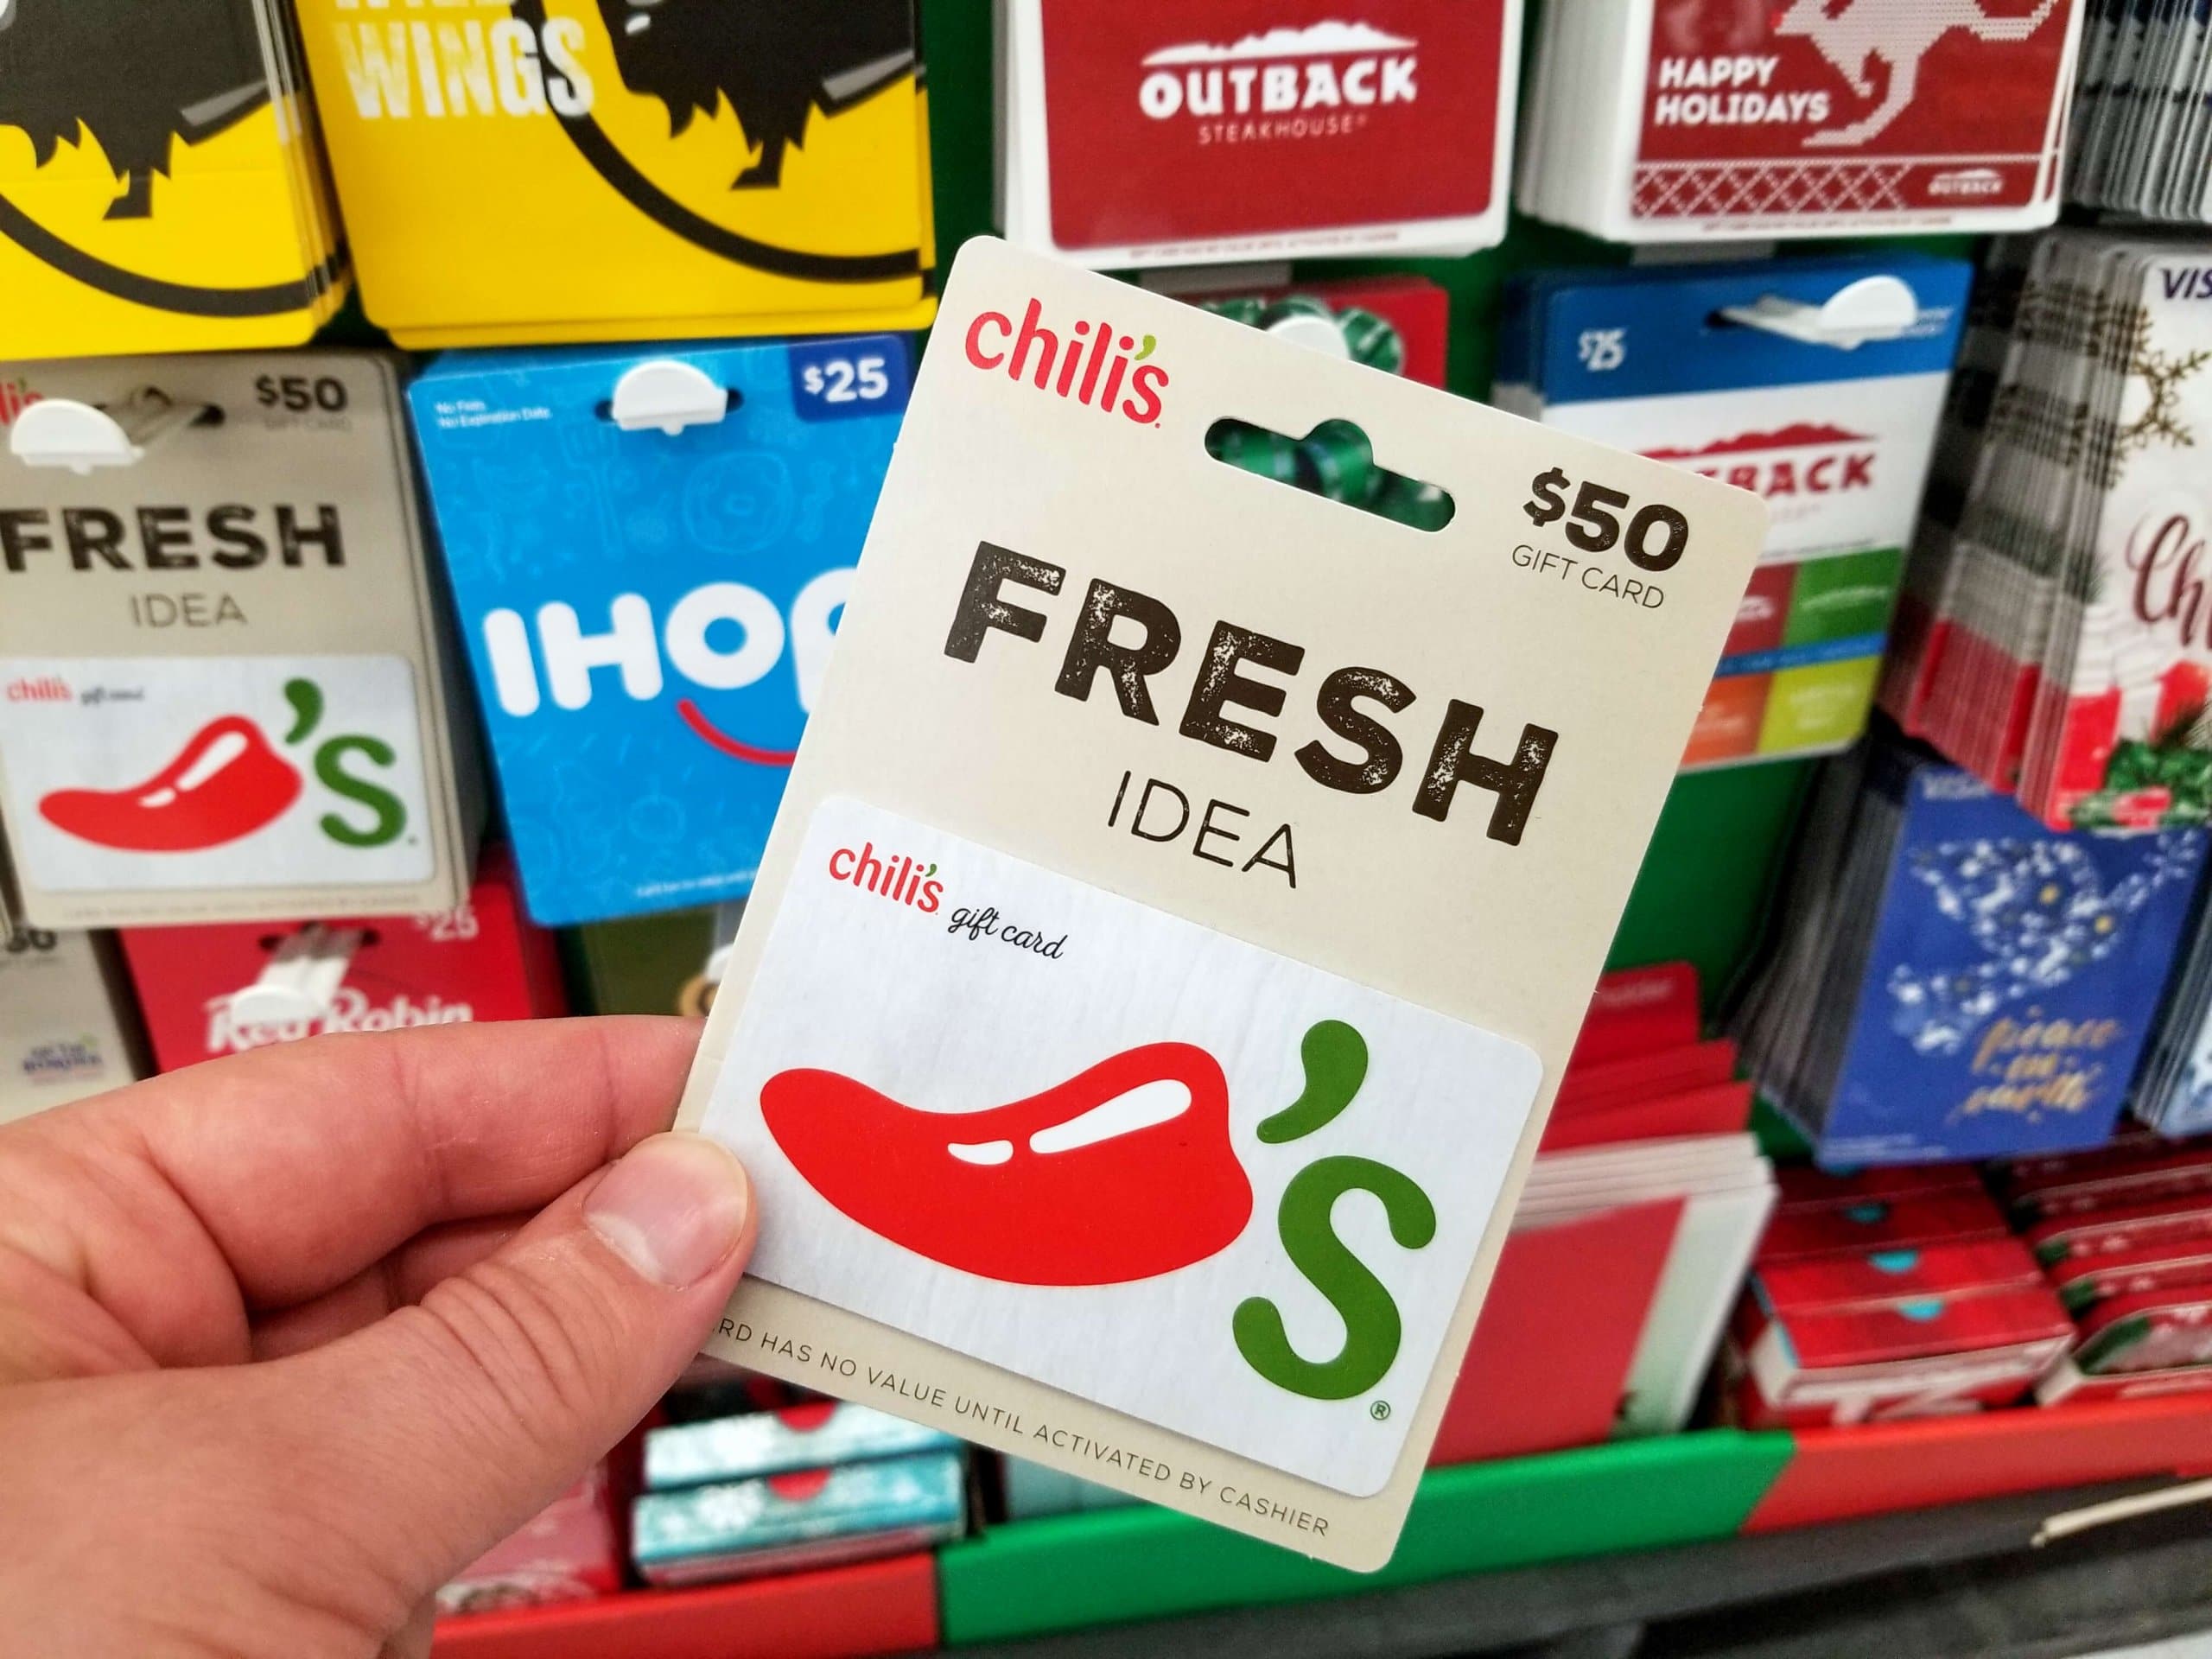 Tarjeta de regalo de Chili's frente a una exhibición de tarjetas de regalo de Walmart